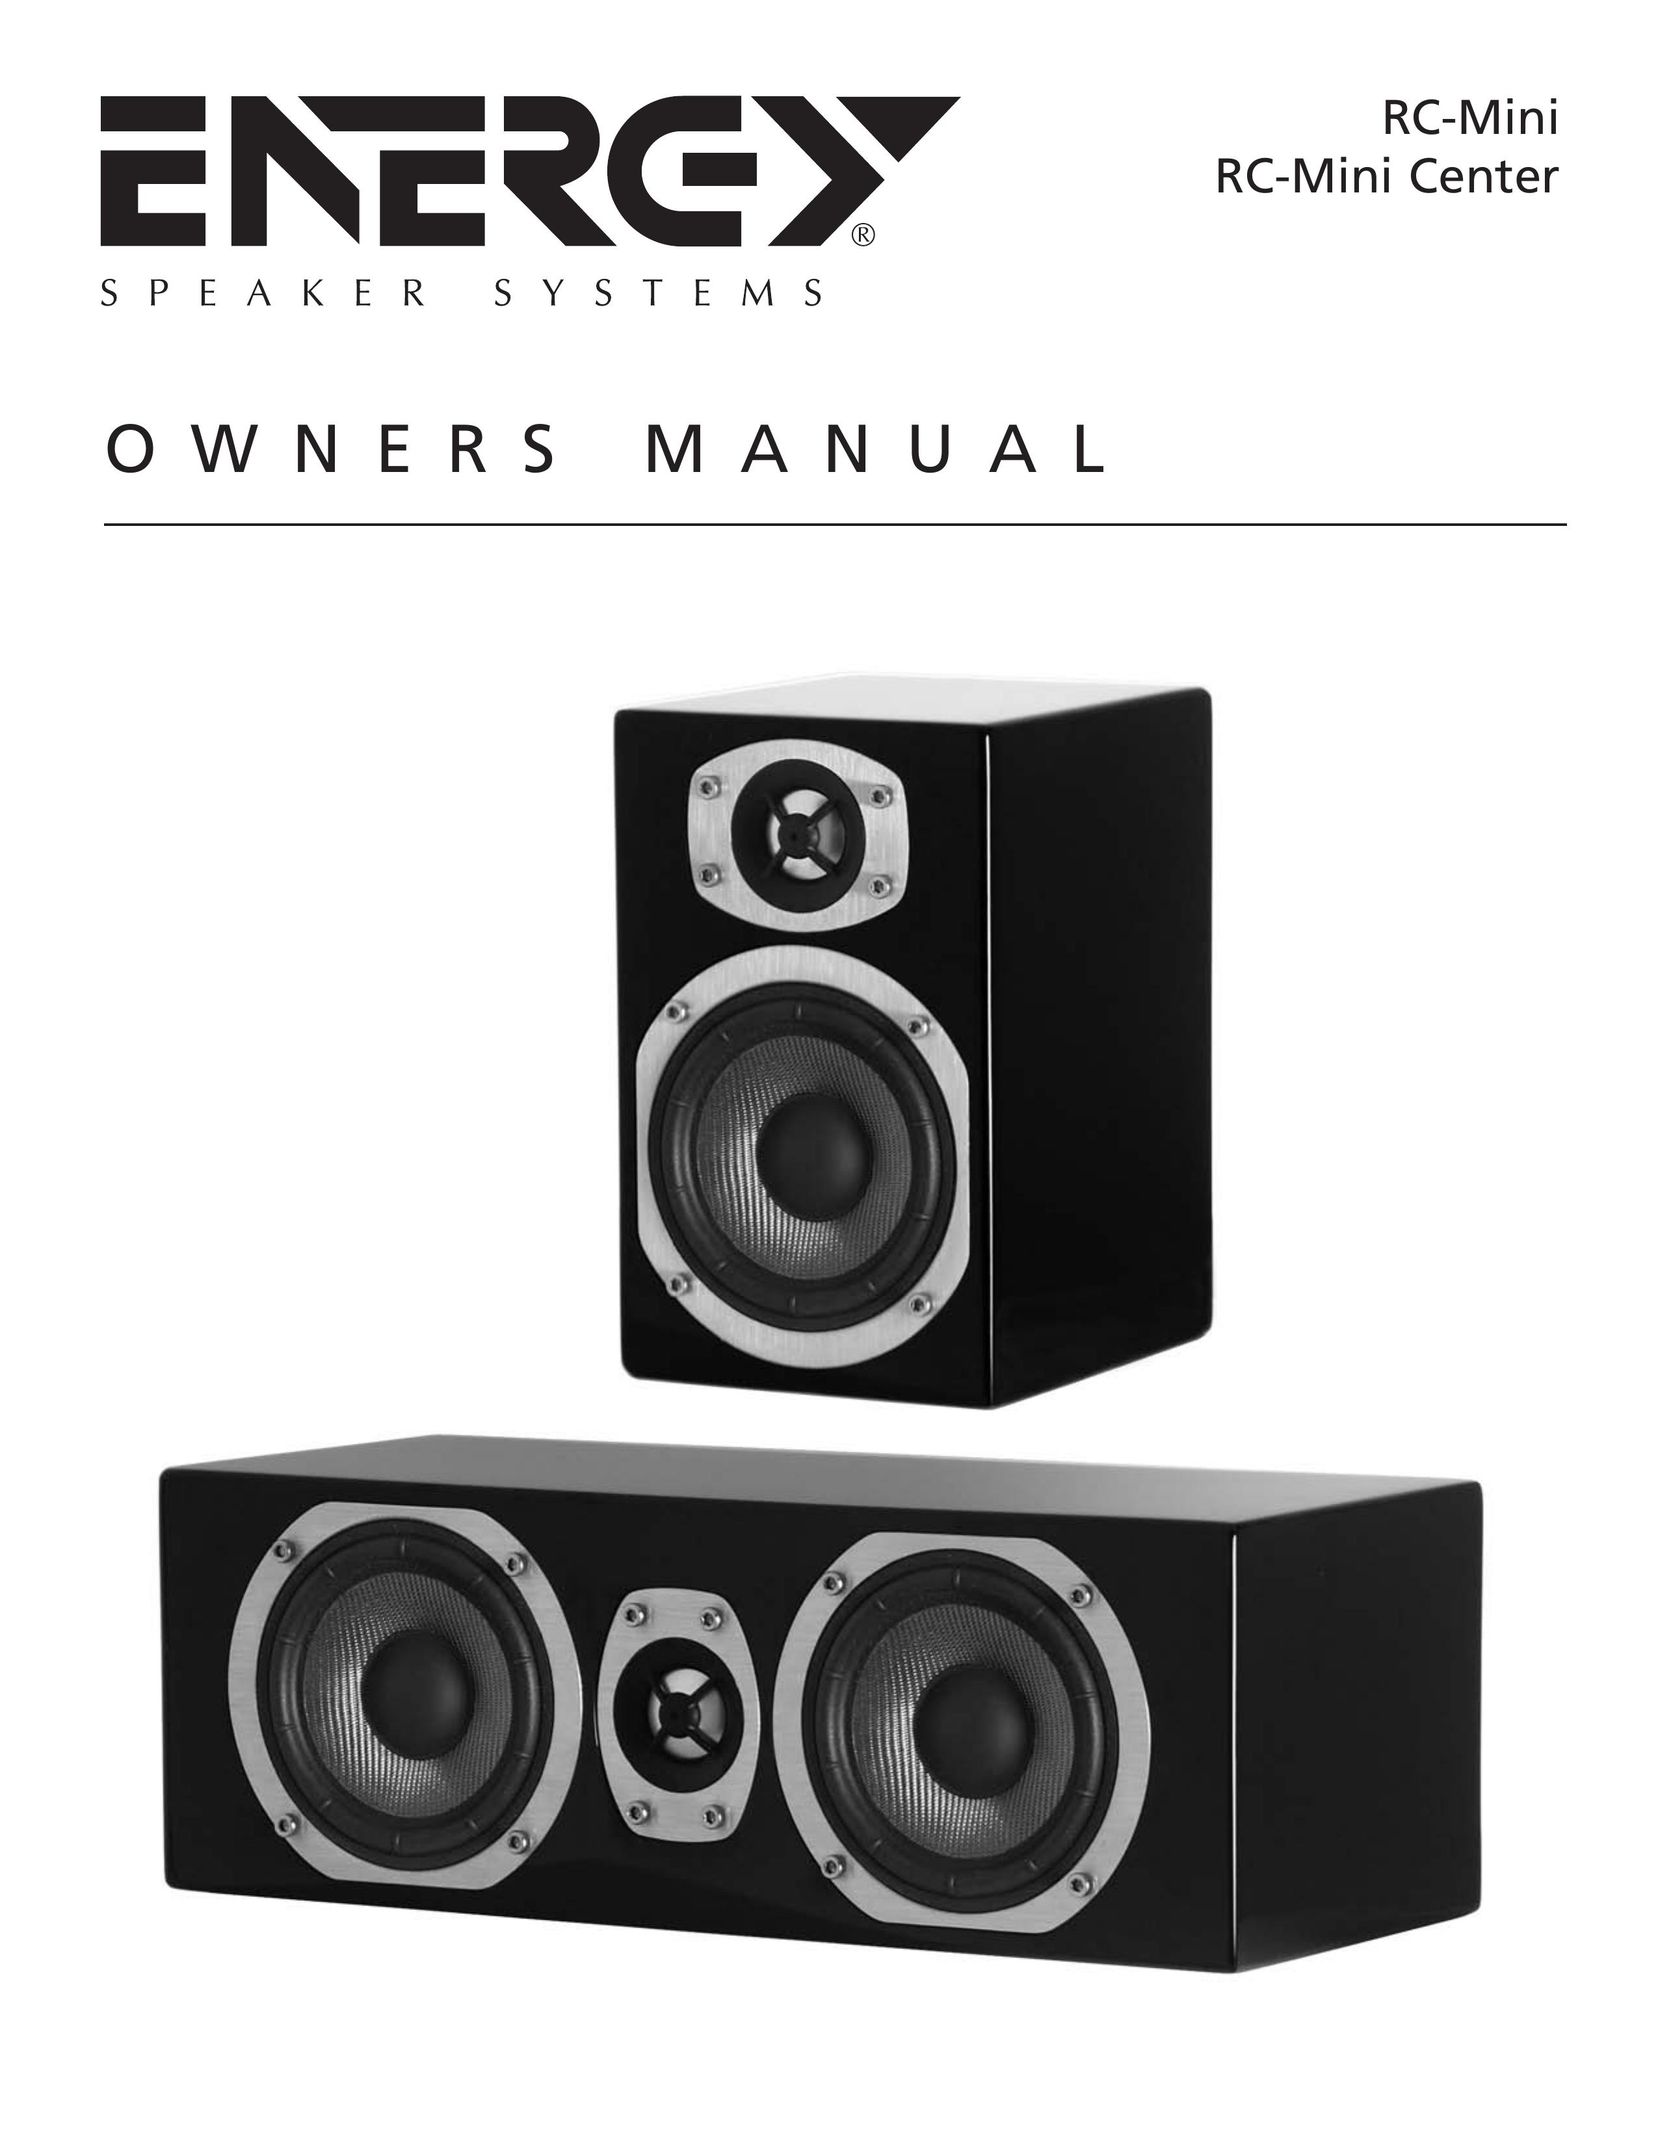 Energy Speaker Systems RC-Mini Speaker User Manual